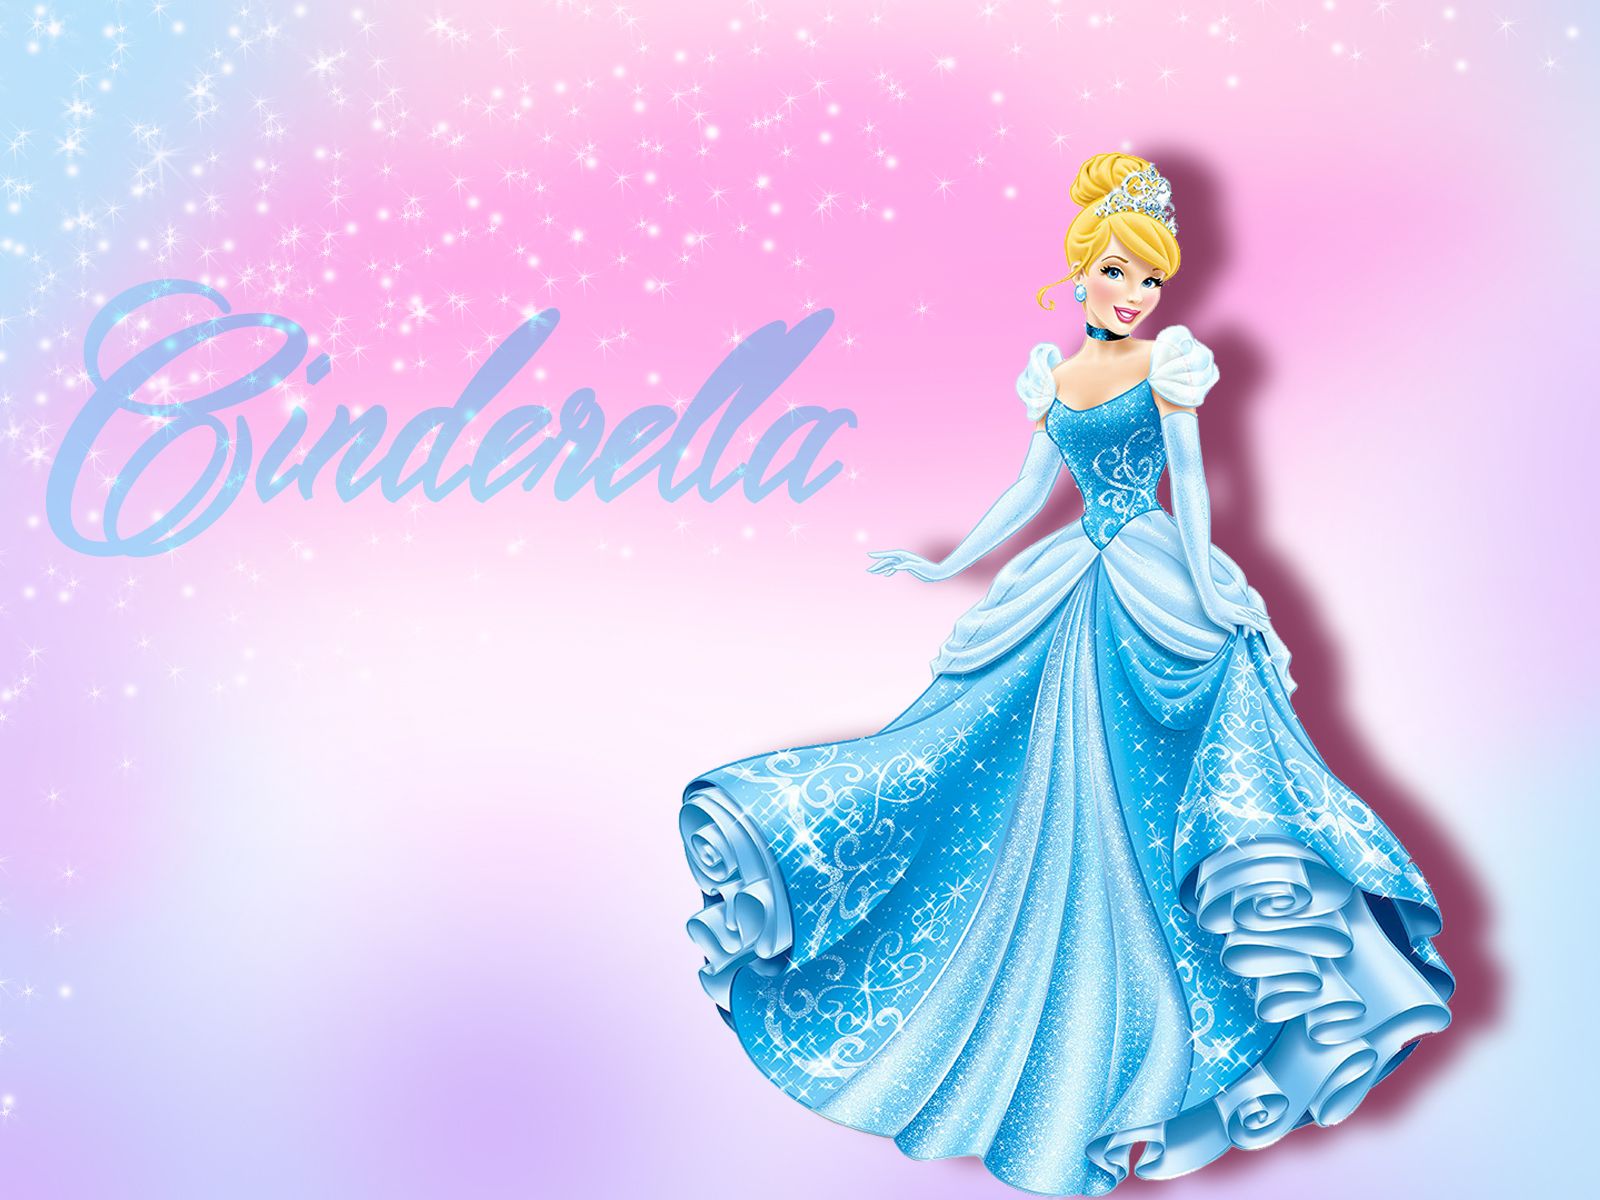 Cinderella Wallpaper .hipwallpaper.com